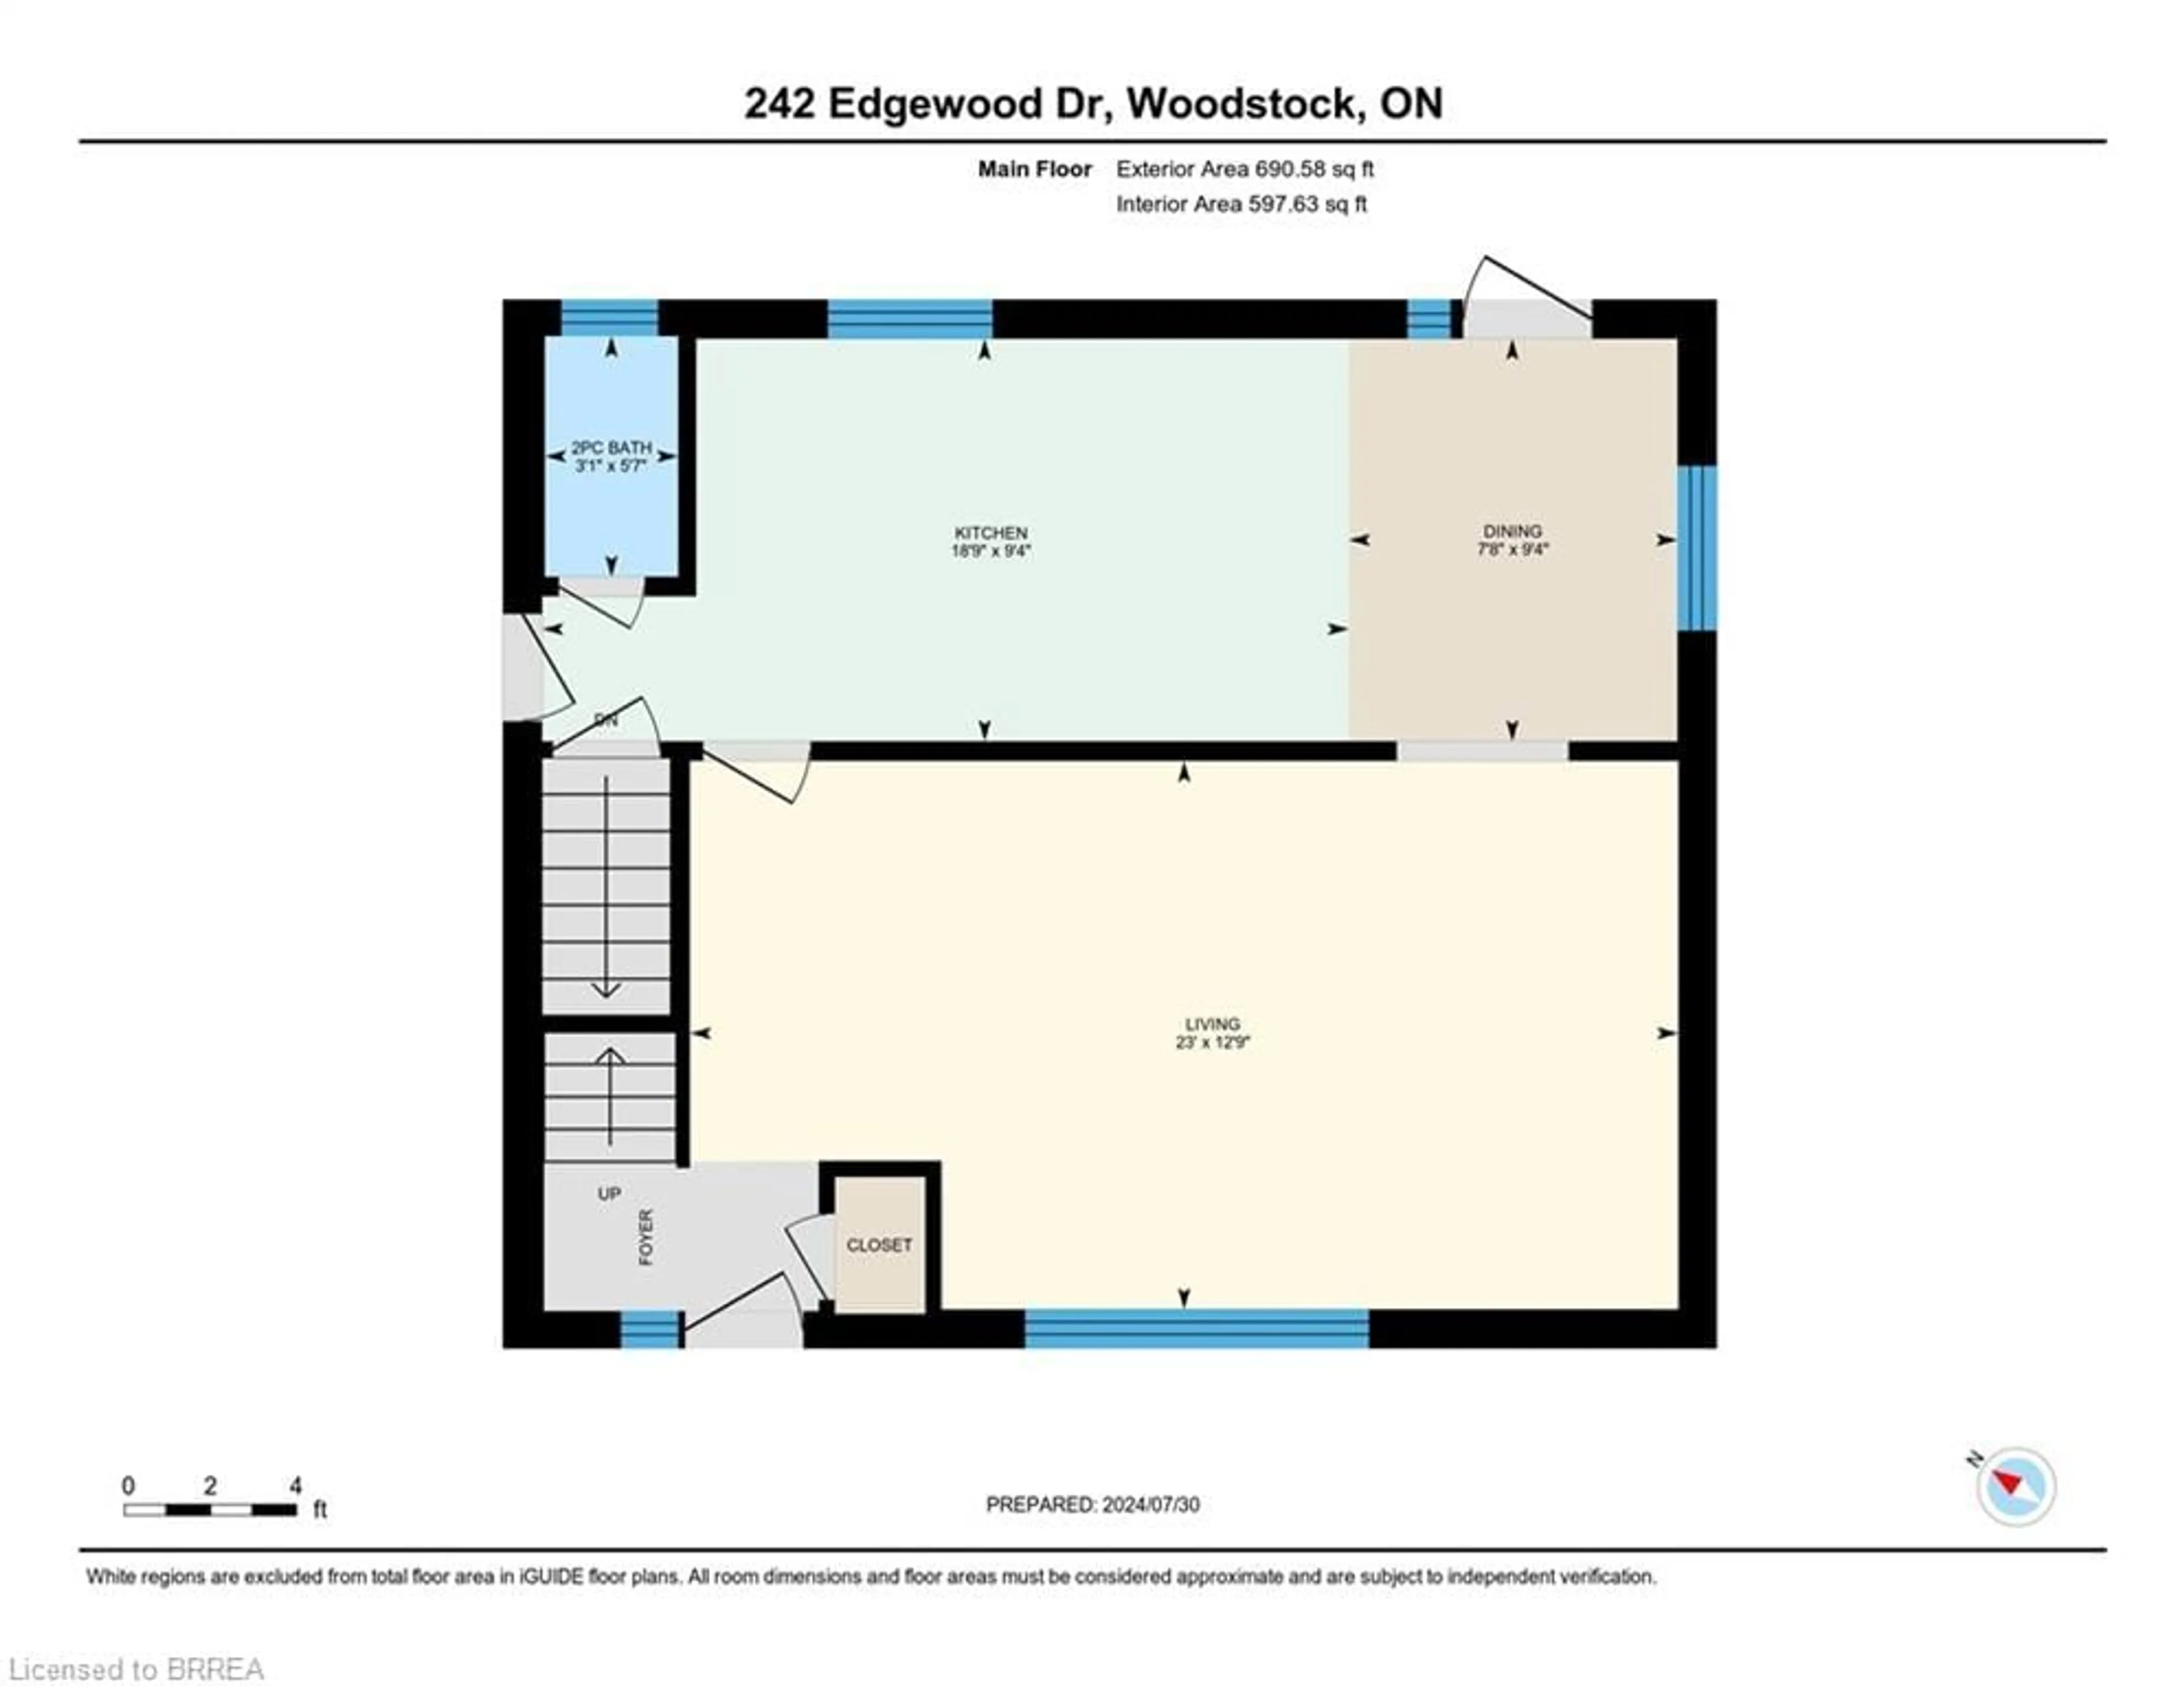 Floor plan for 242 Edgewood Dr, Woodstock Ontario N4S 7P3